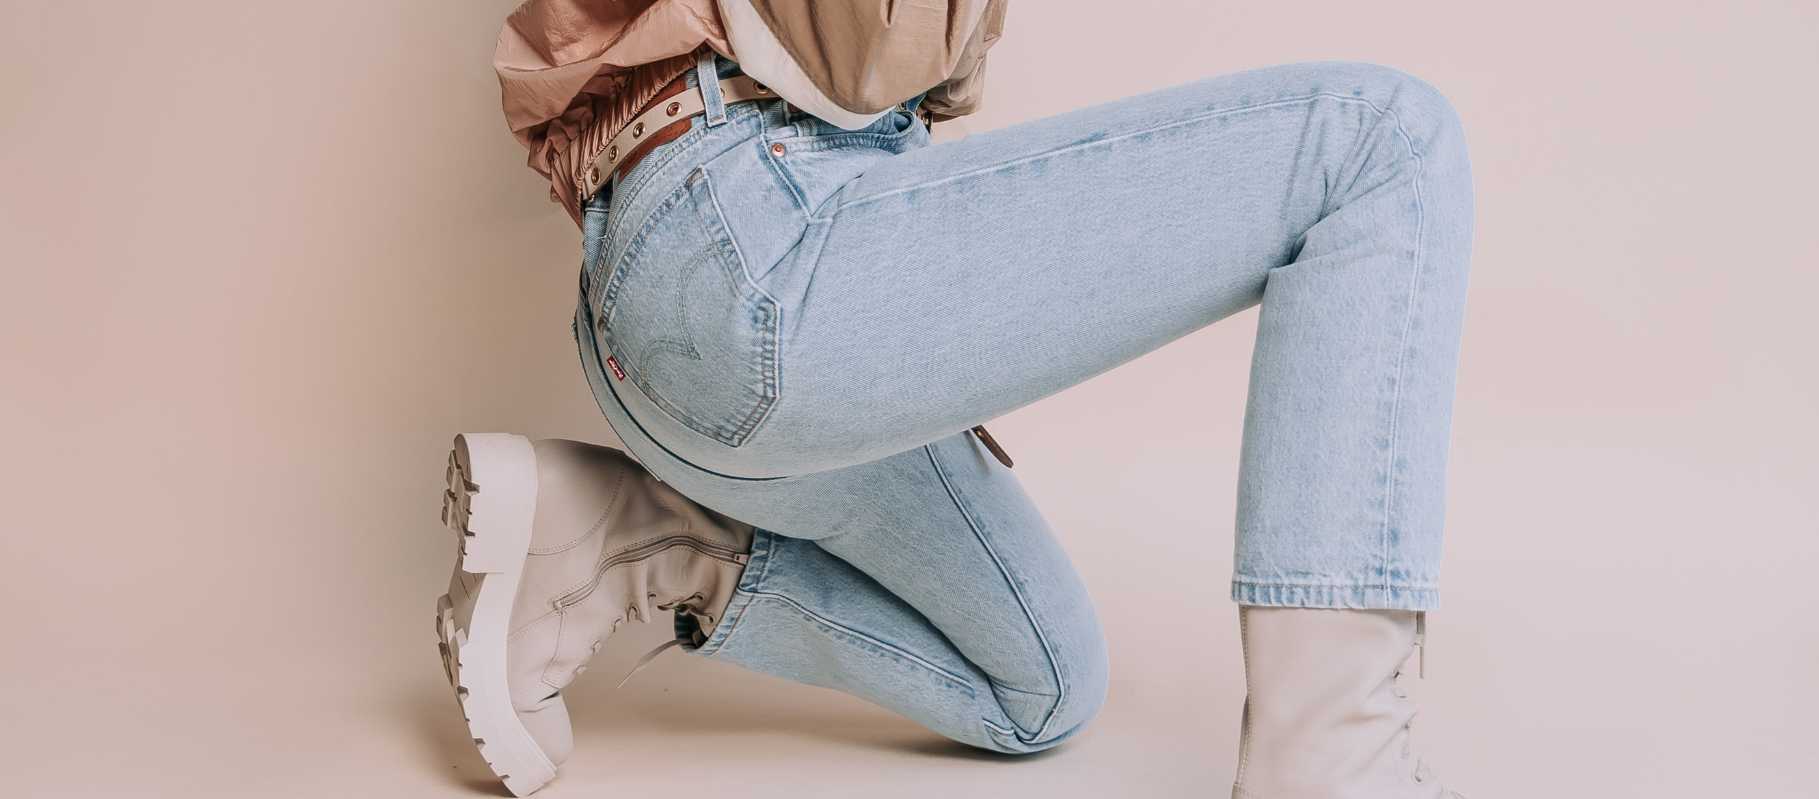 Tutor Comorama Overtollig Tips om een blauwe broek te combineren - Berden Fashion Blog